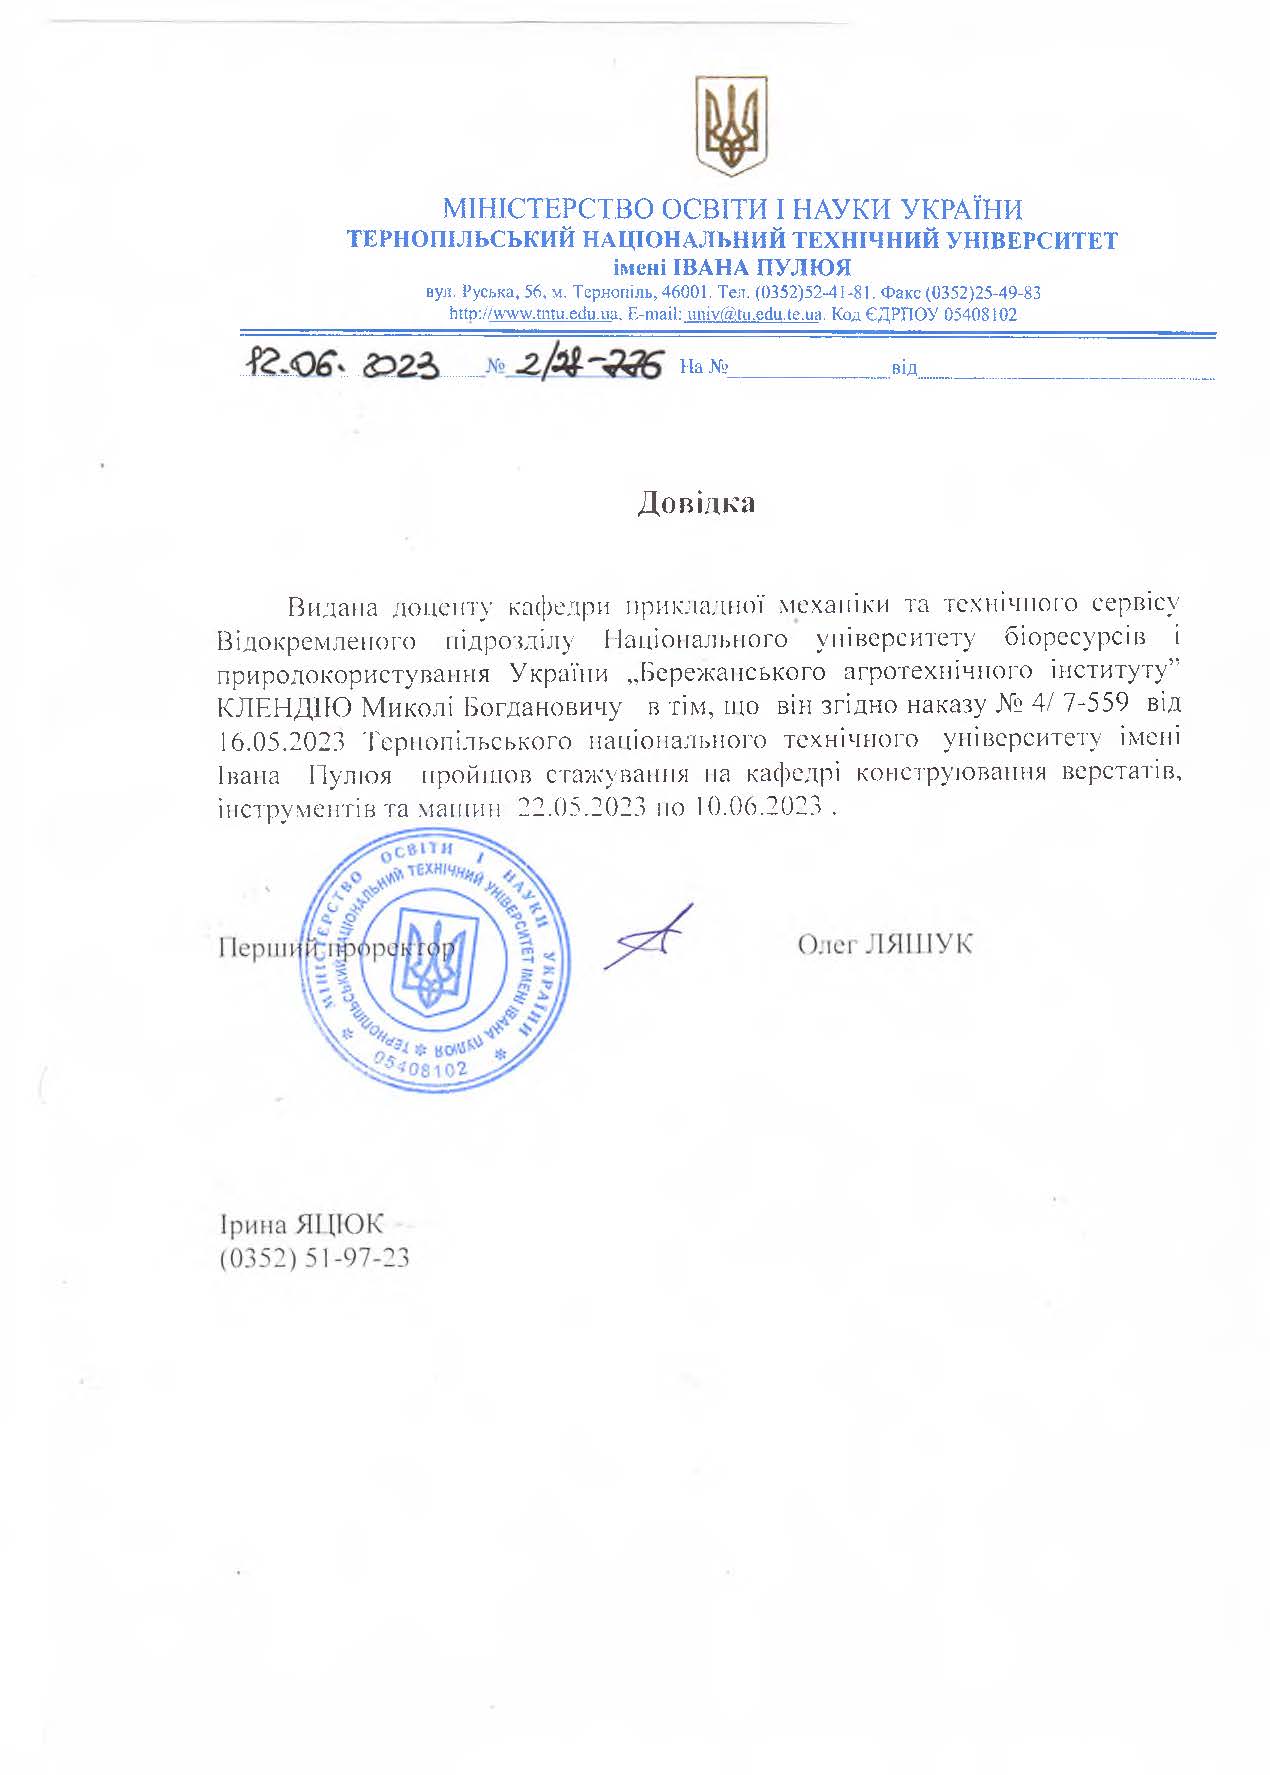 Certificate Khrystenko